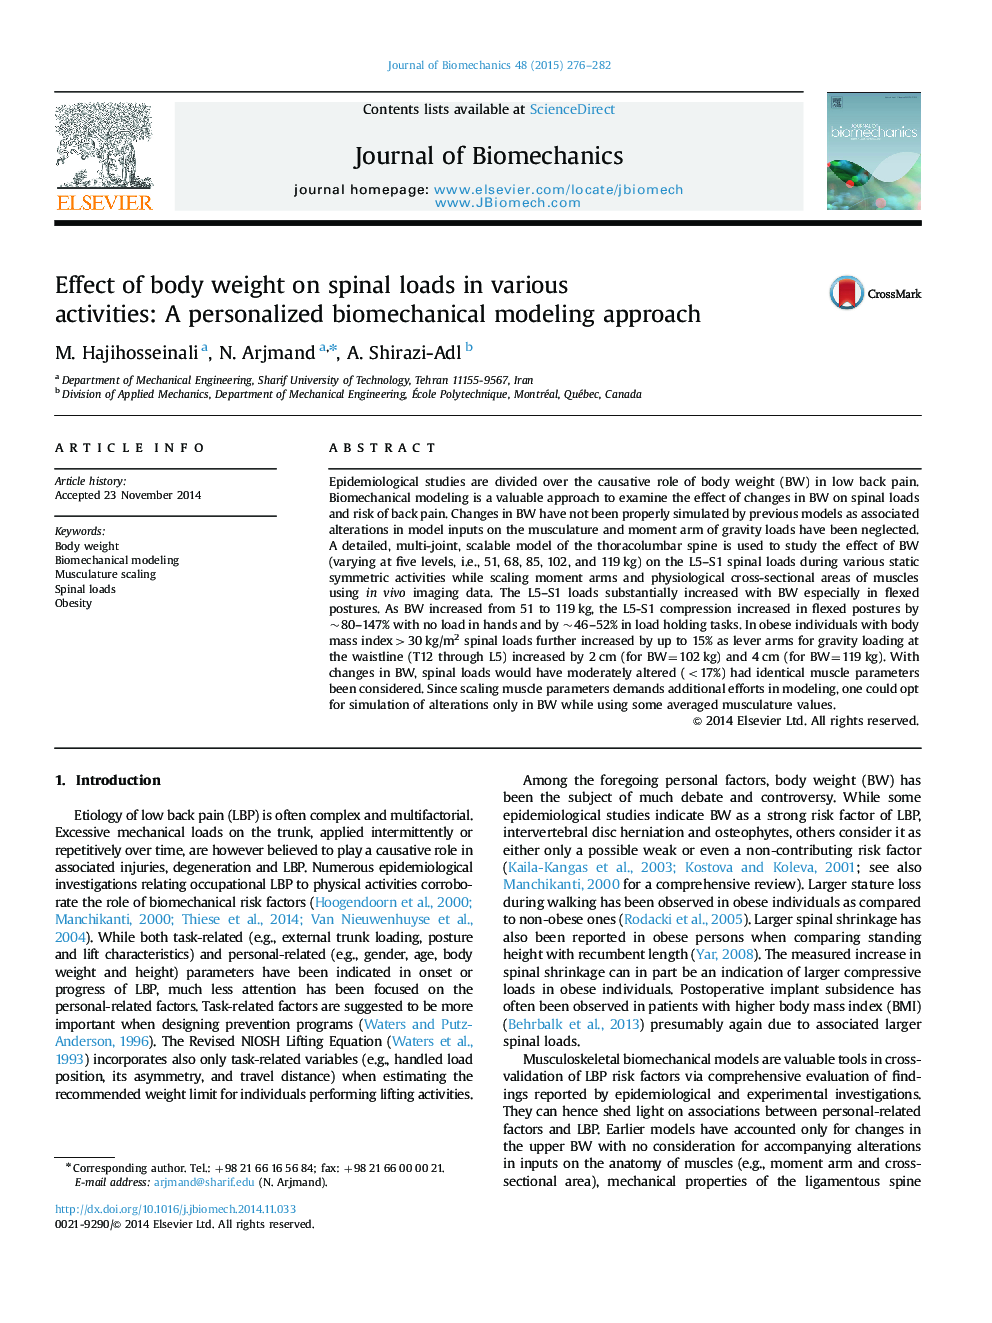 اثر وزن بدن بر بارهای ستون فقرات در فعالیت های مختلف: یک روش مدل سازی بیومکانیک شخصی 